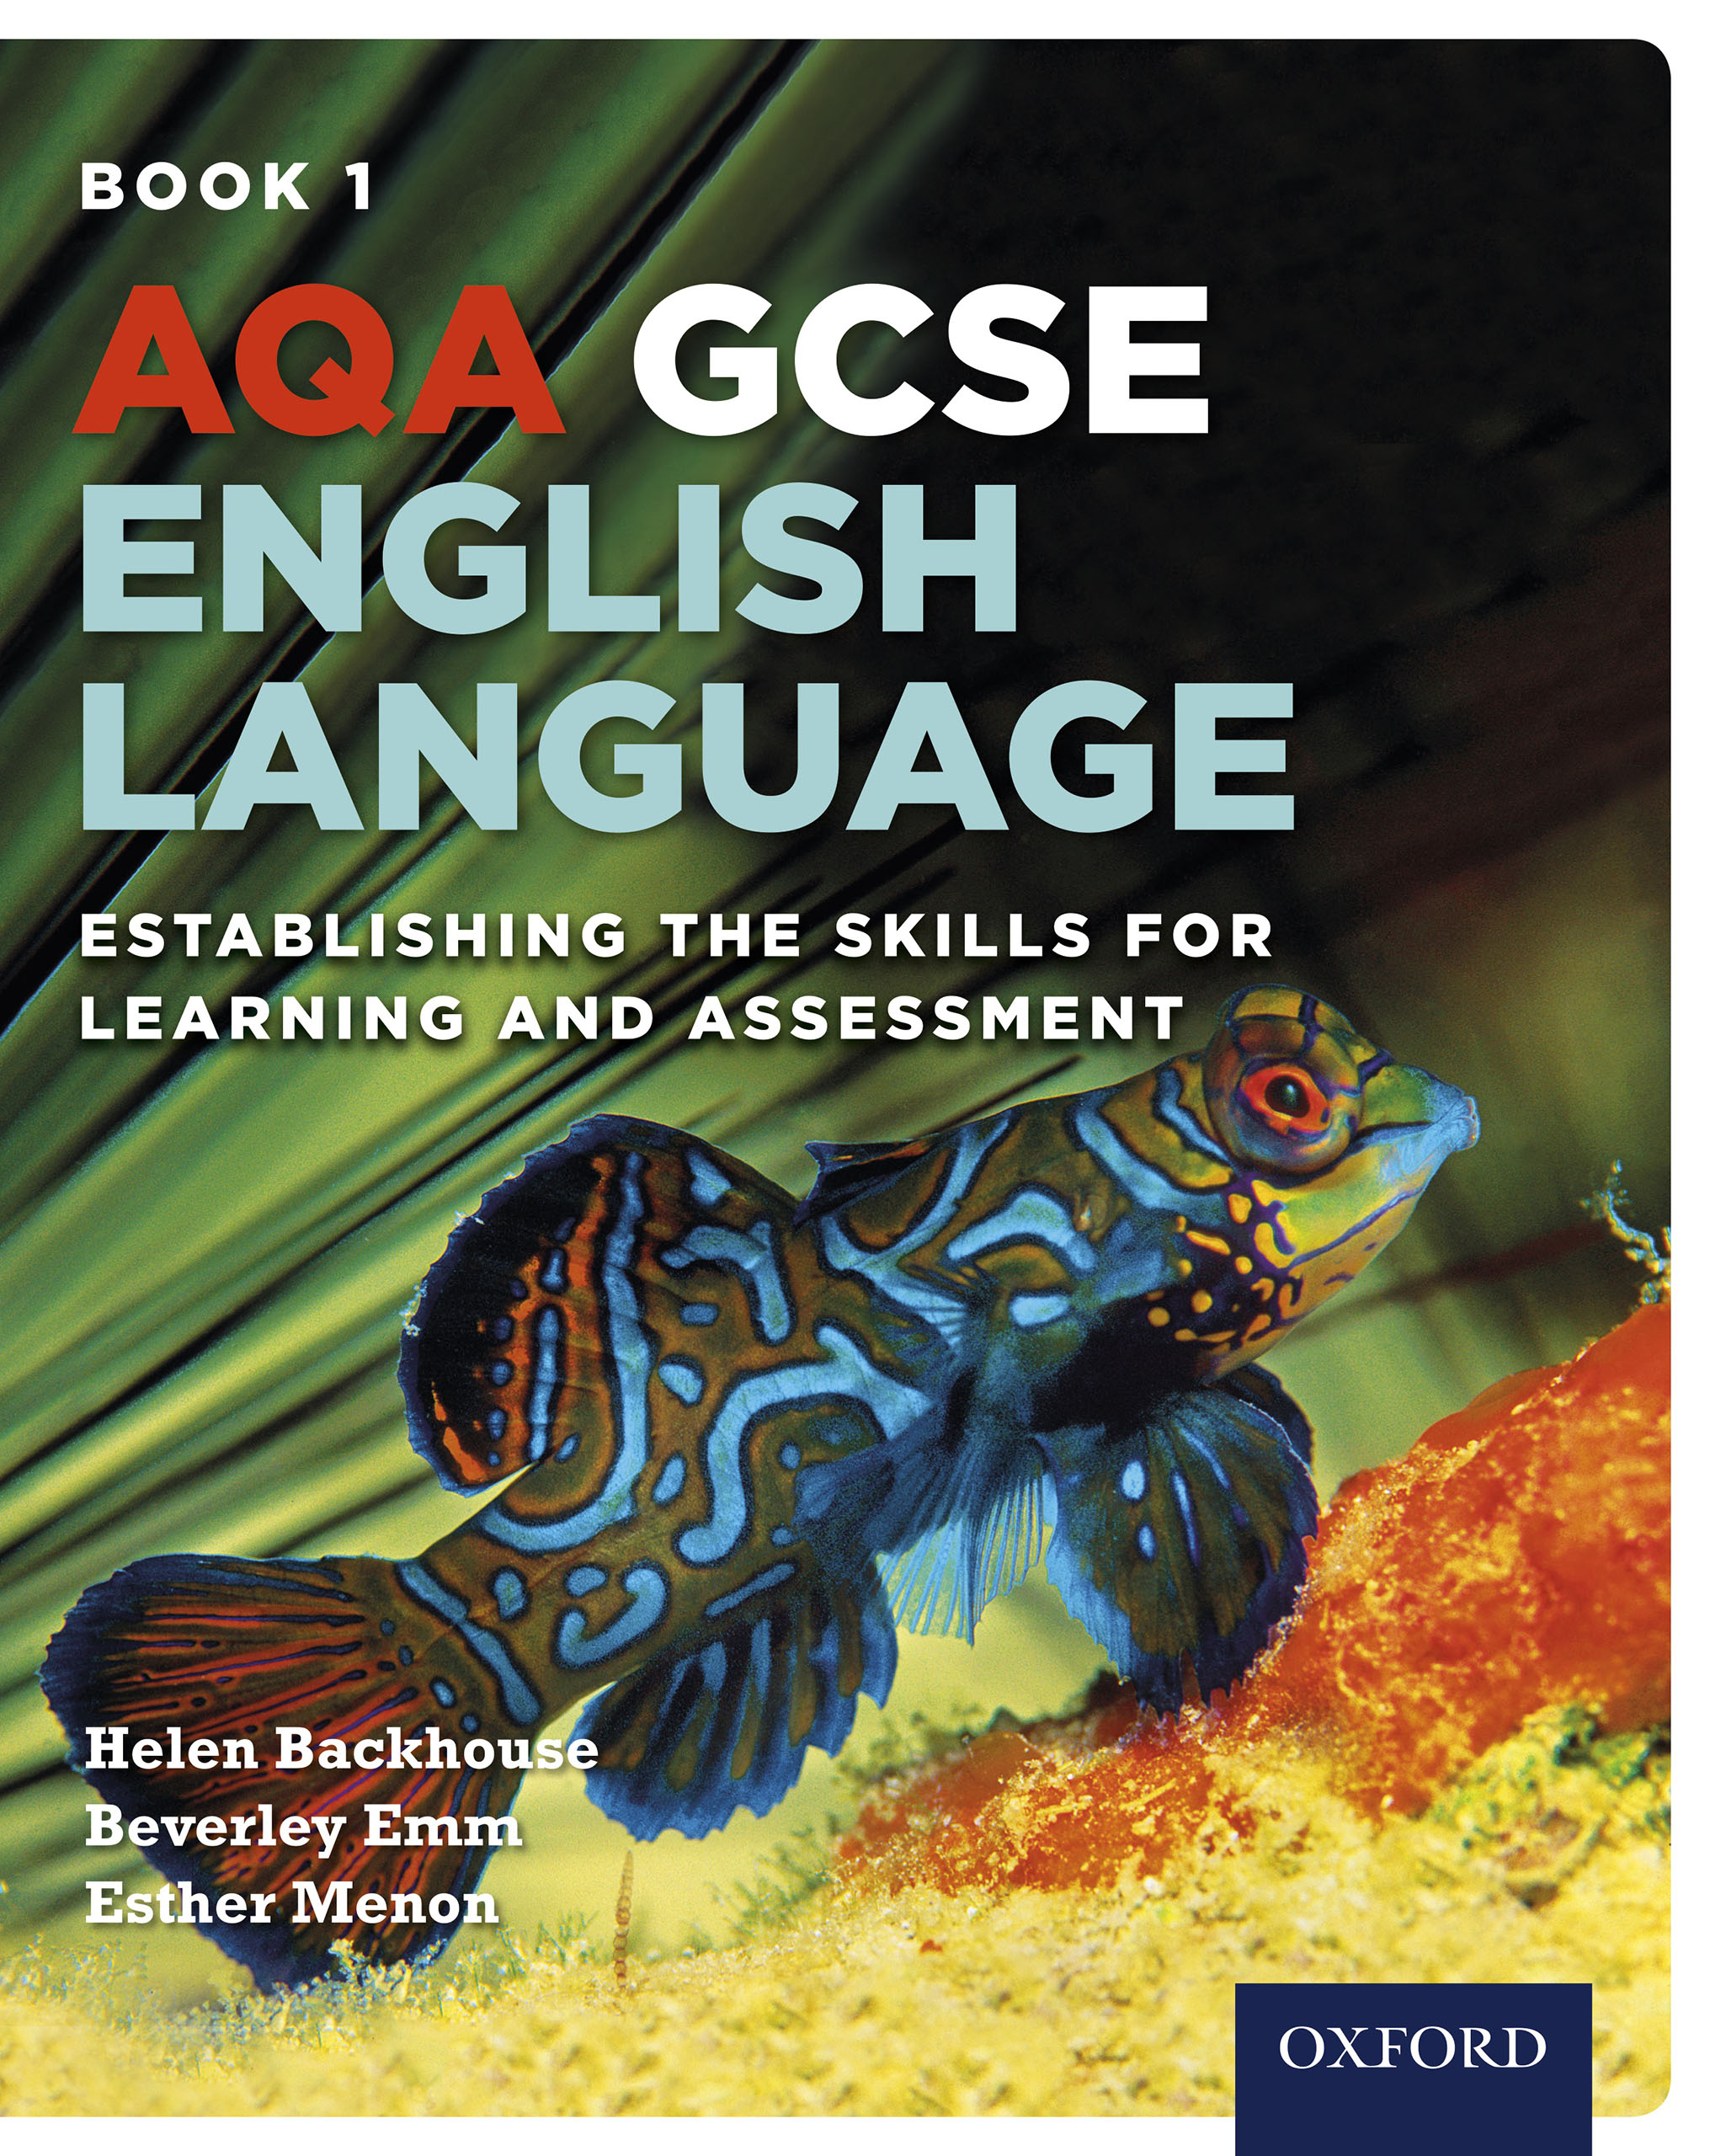 AQA GCSE English language